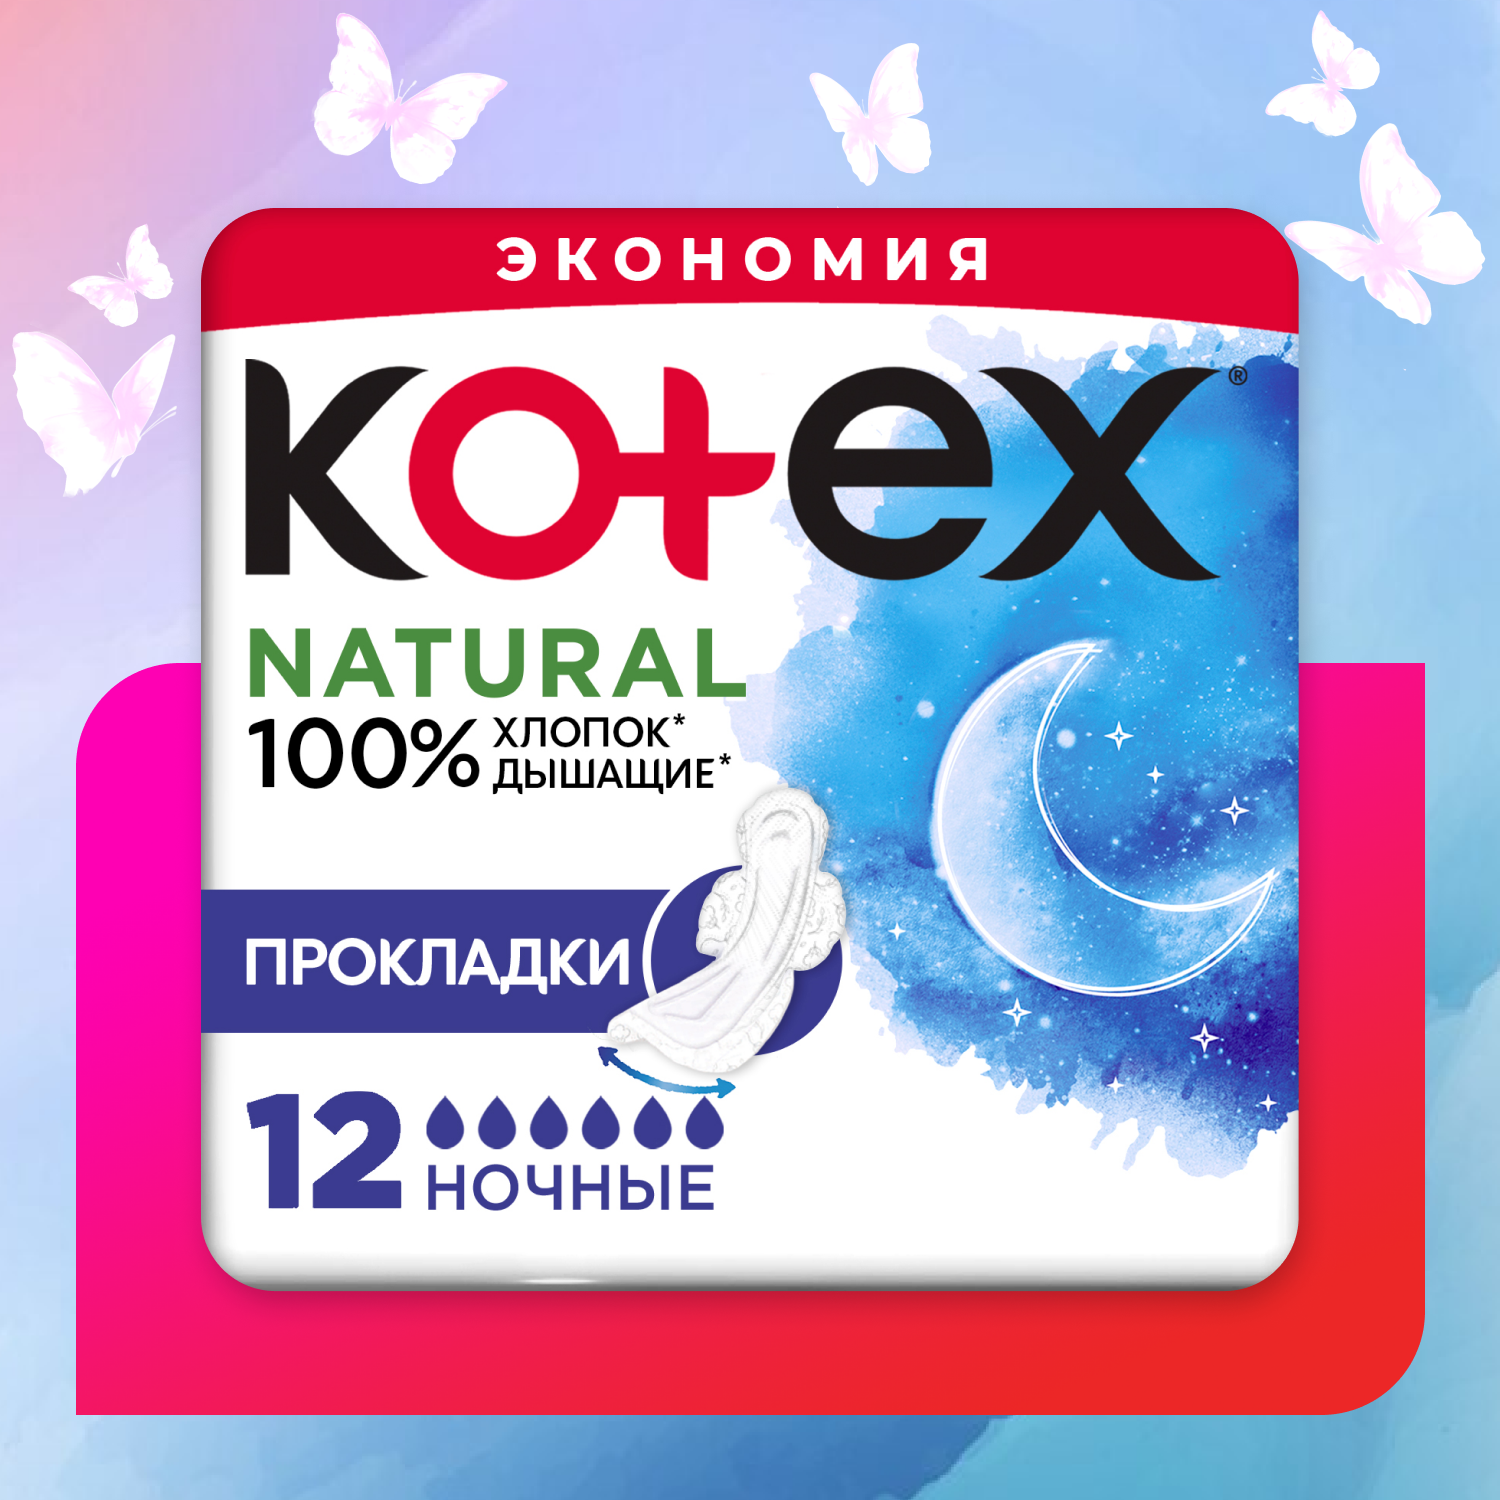 Прокладки KOTEX Natural ночные 12шт - фото 1